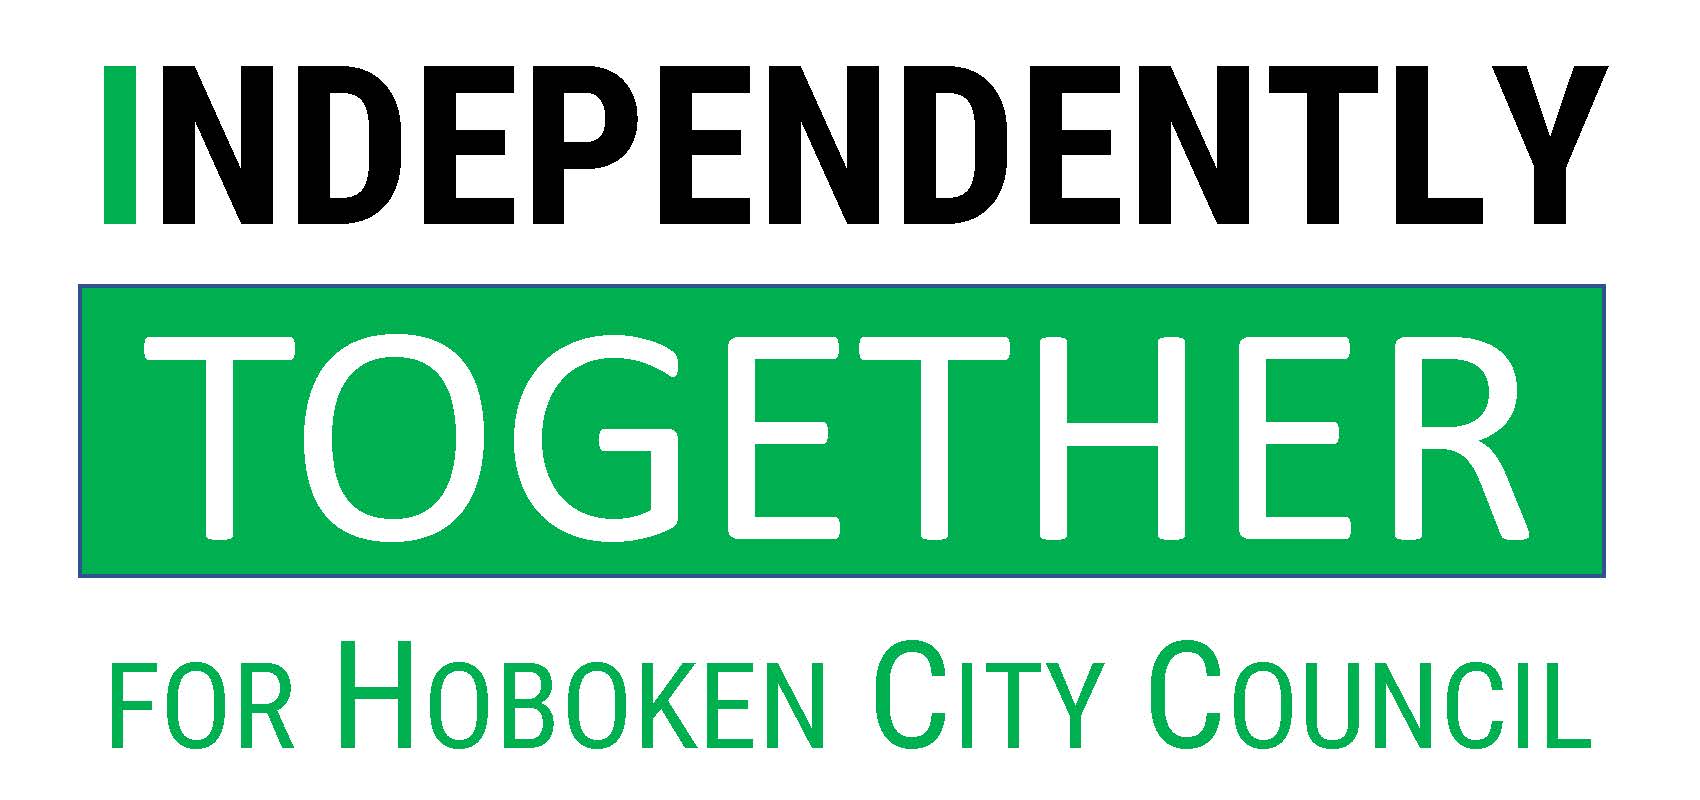 Independently Together logo